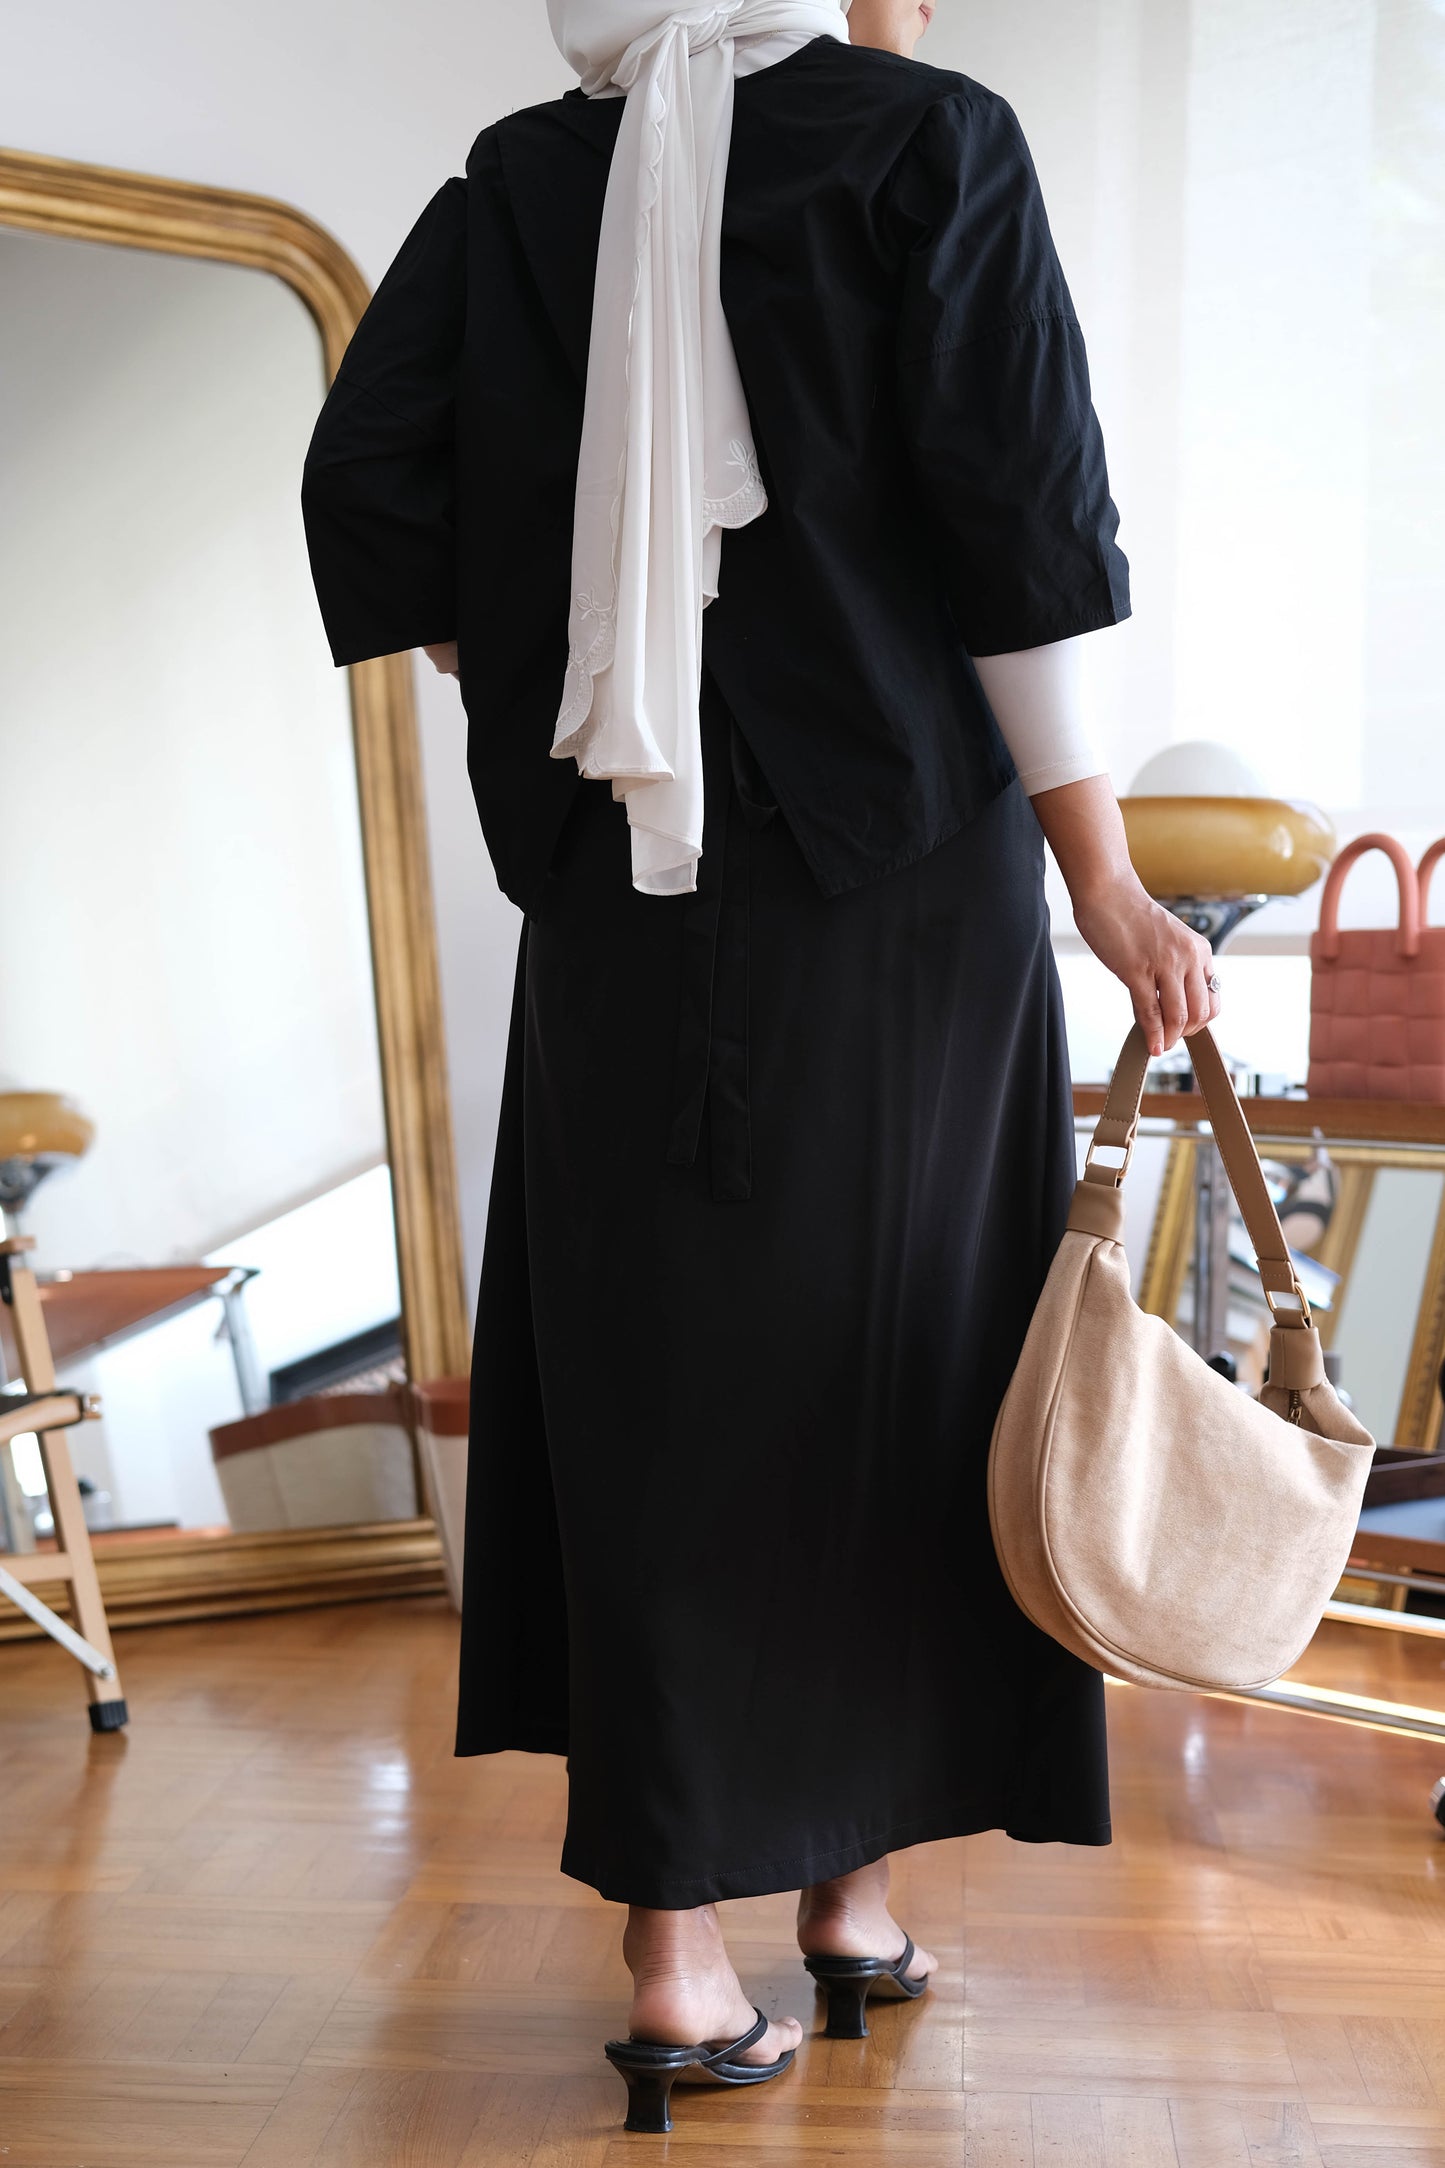 Pleated skirt long skirt in classic black